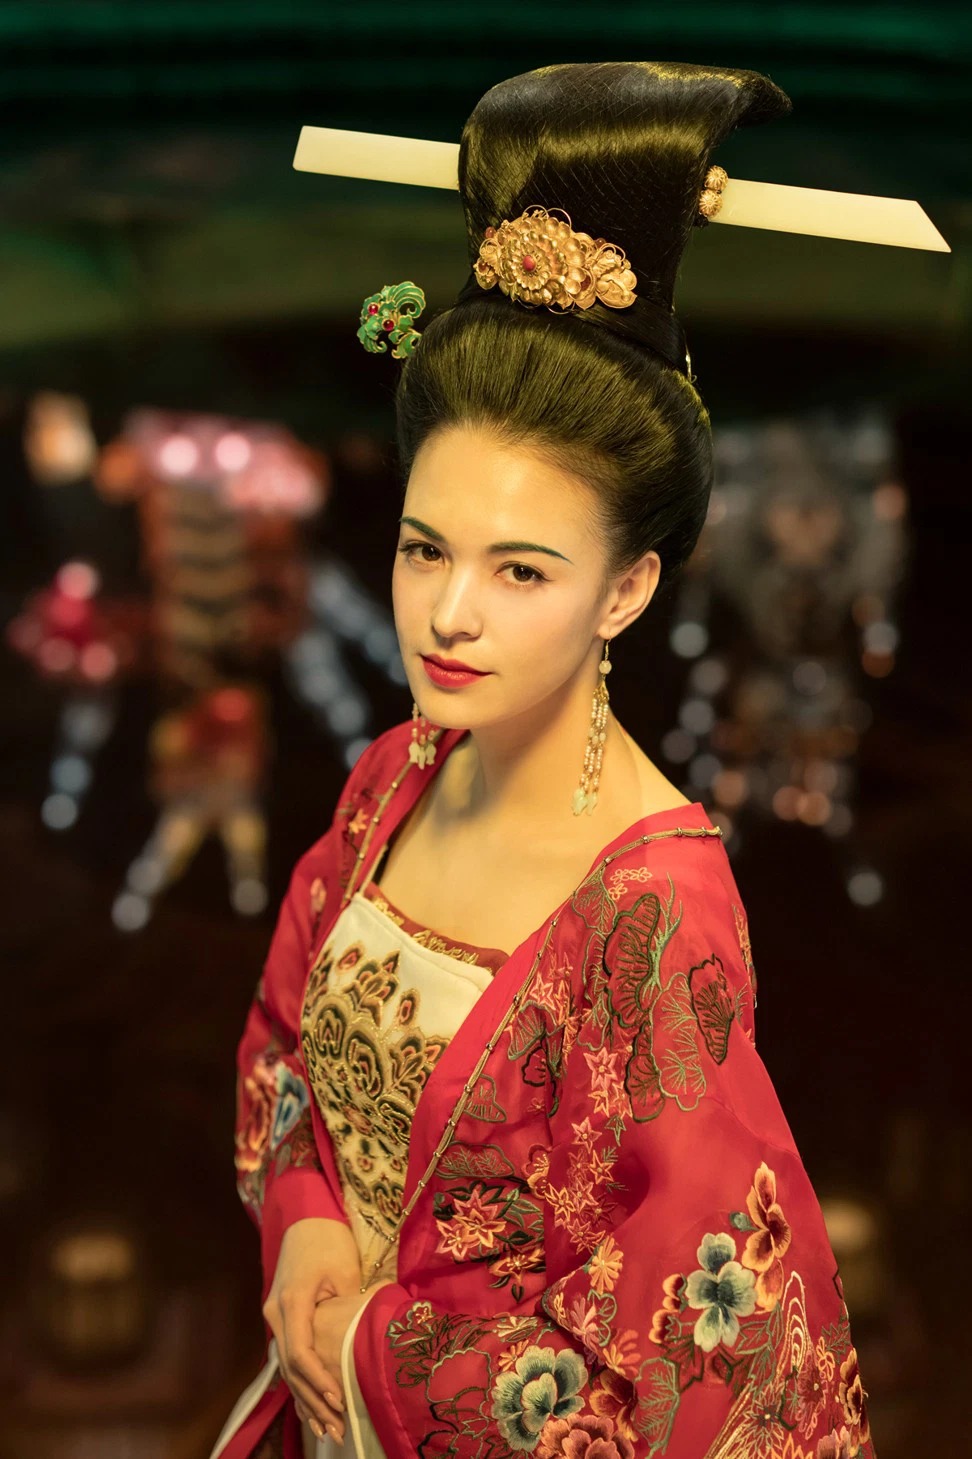 Dàn sao Cbiz xuống sắc thảm hại: Người đẹp 'Đông Cung' tàn tạ, 'đệ nhất mỹ nữ cổ trang' tan tành sự nghiệp vì dao kéo - Ảnh 5